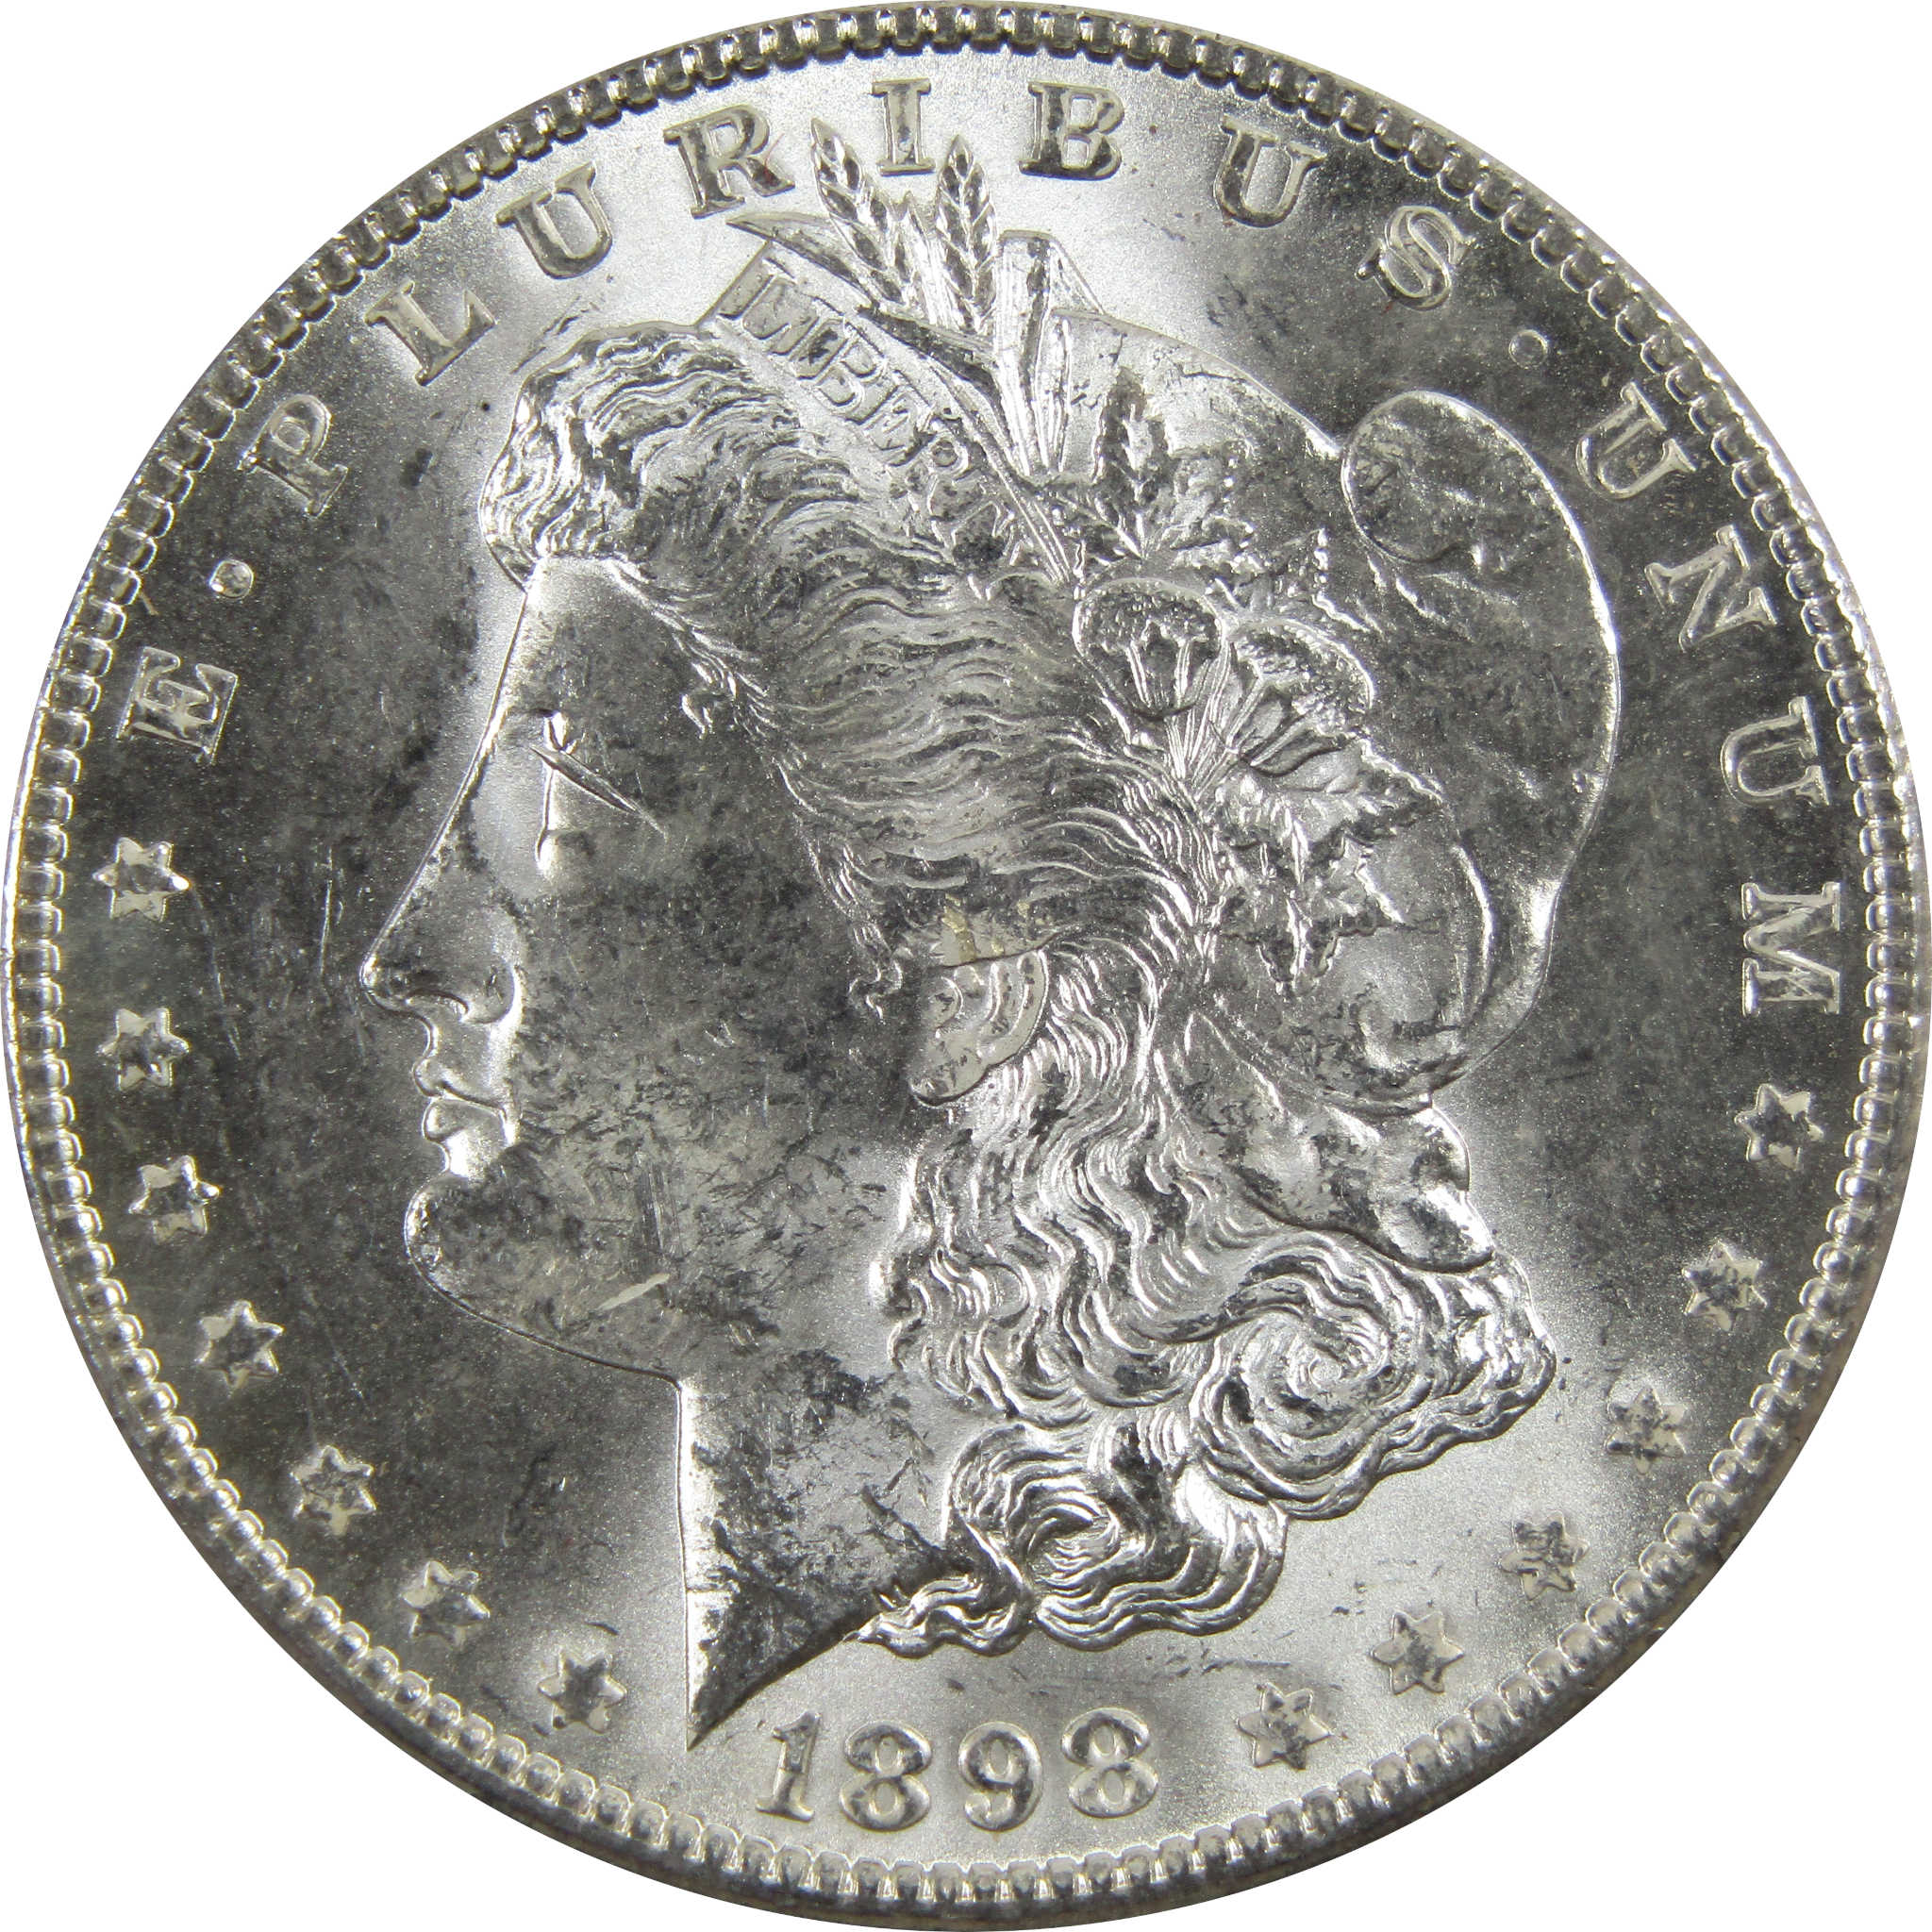 1898 O Morgan Dollar BU Uncirculated 90% Silver $1 Coin SKU:I5272 - Morgan coin - Morgan silver dollar - Morgan silver dollar for sale - Profile Coins &amp; Collectibles